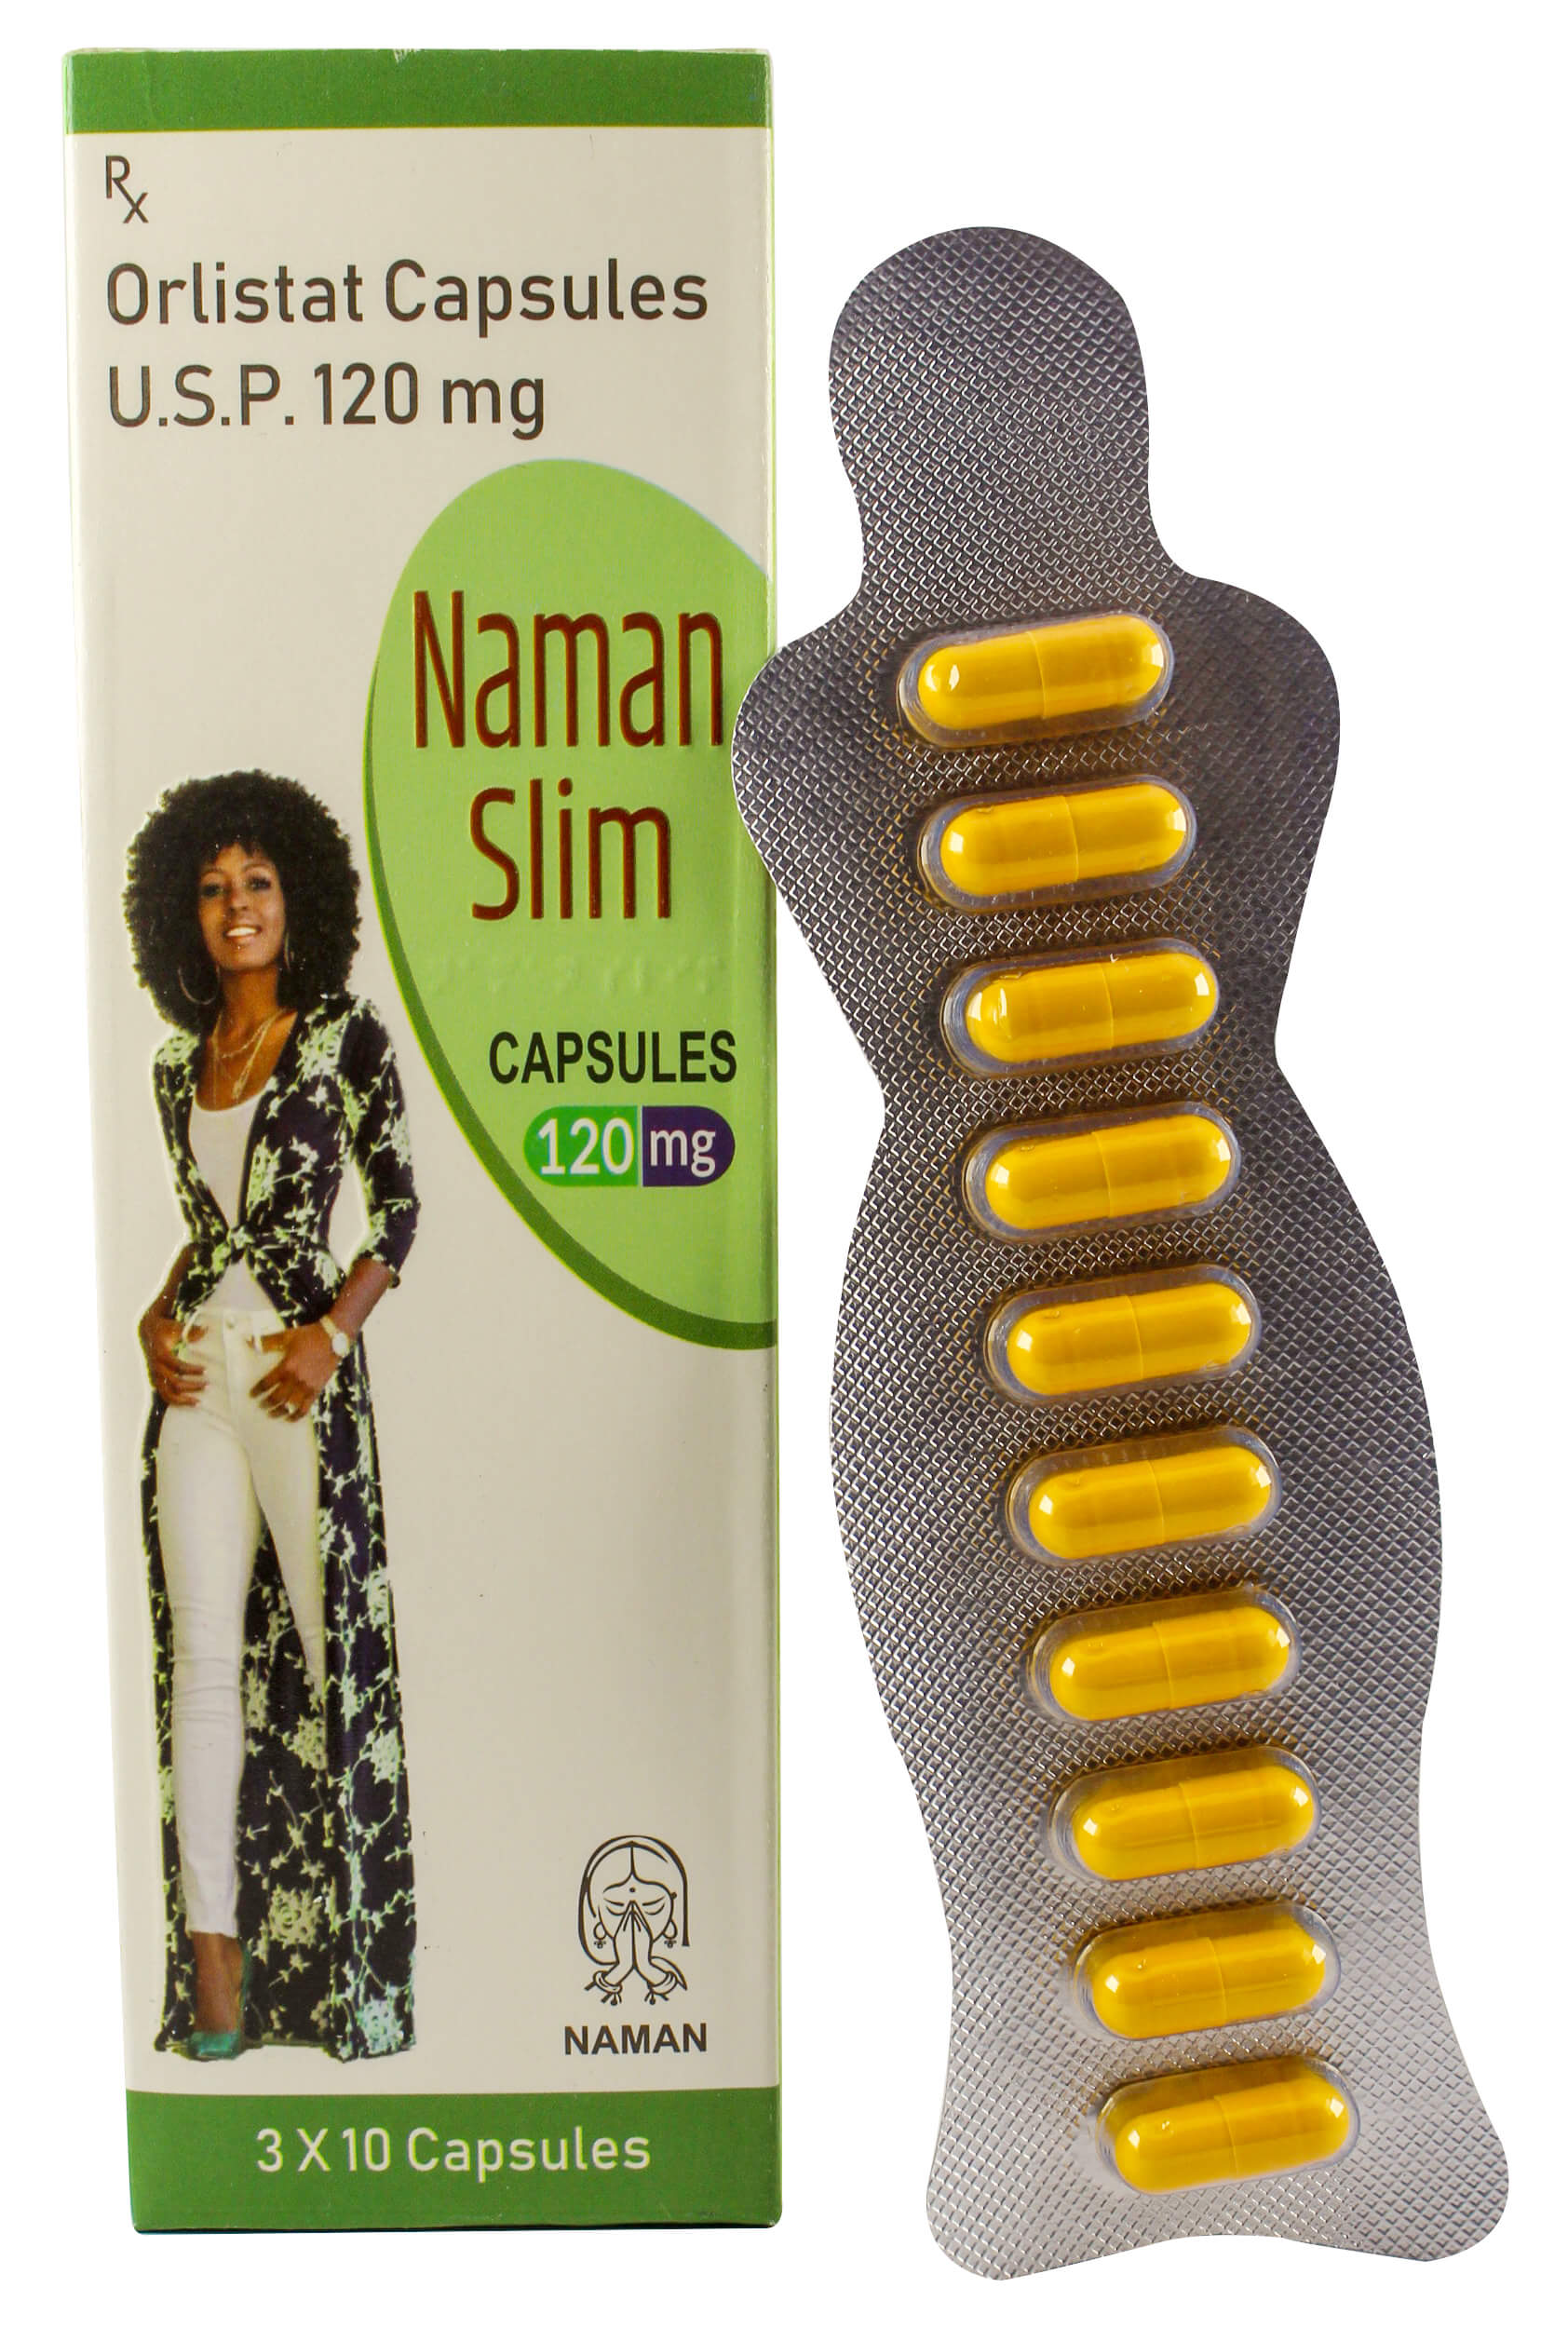 Naman-slim-120mg-capsules